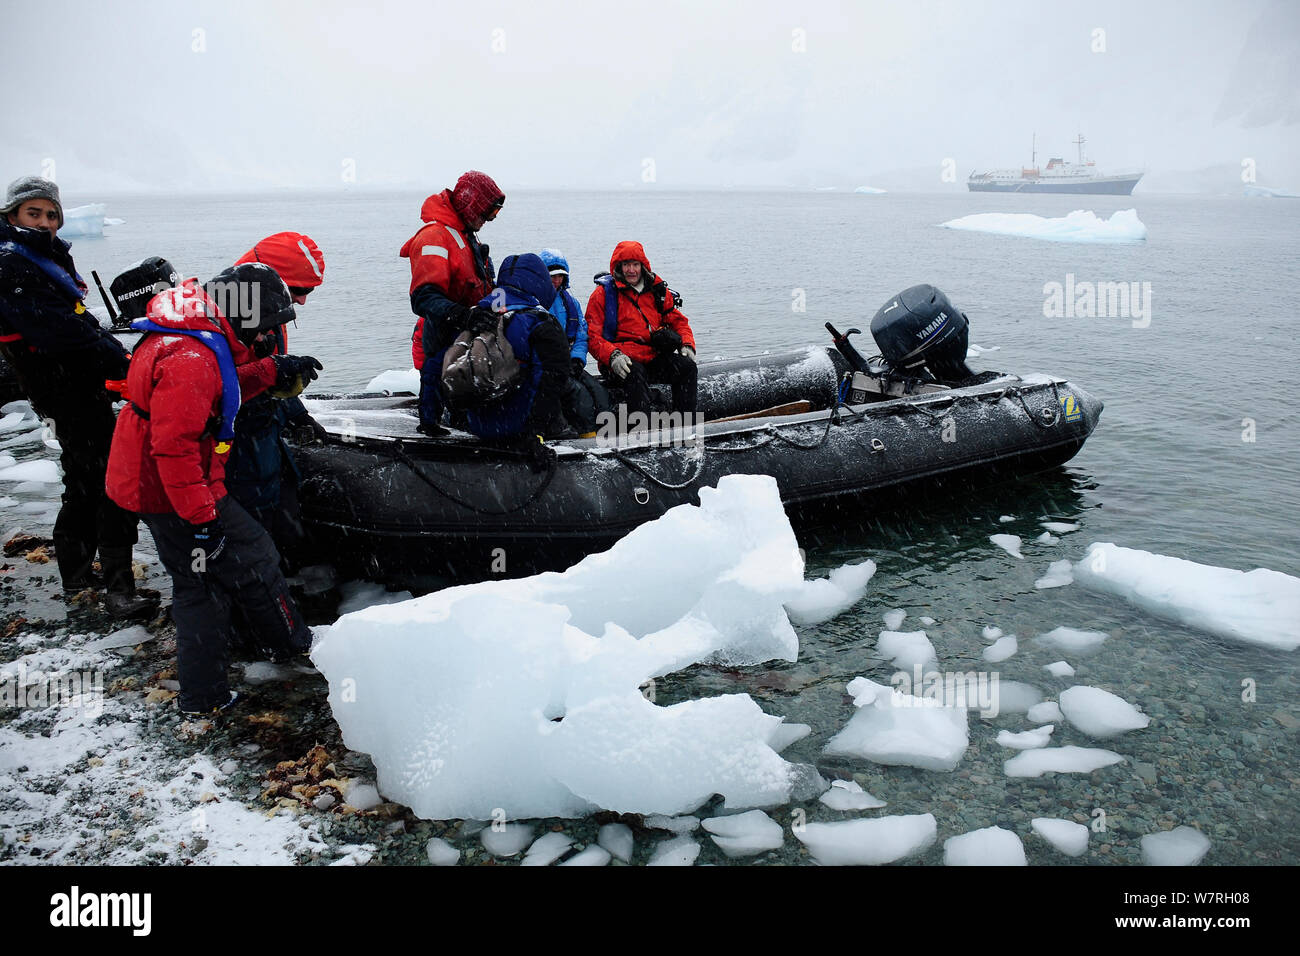 Les touristes débarquant d'zodiac avec un paquebot de croisière antarctique Ushuaia 'MV' dans le contexte de la péninsule Antarctique, l'Antarctique Banque D'Images